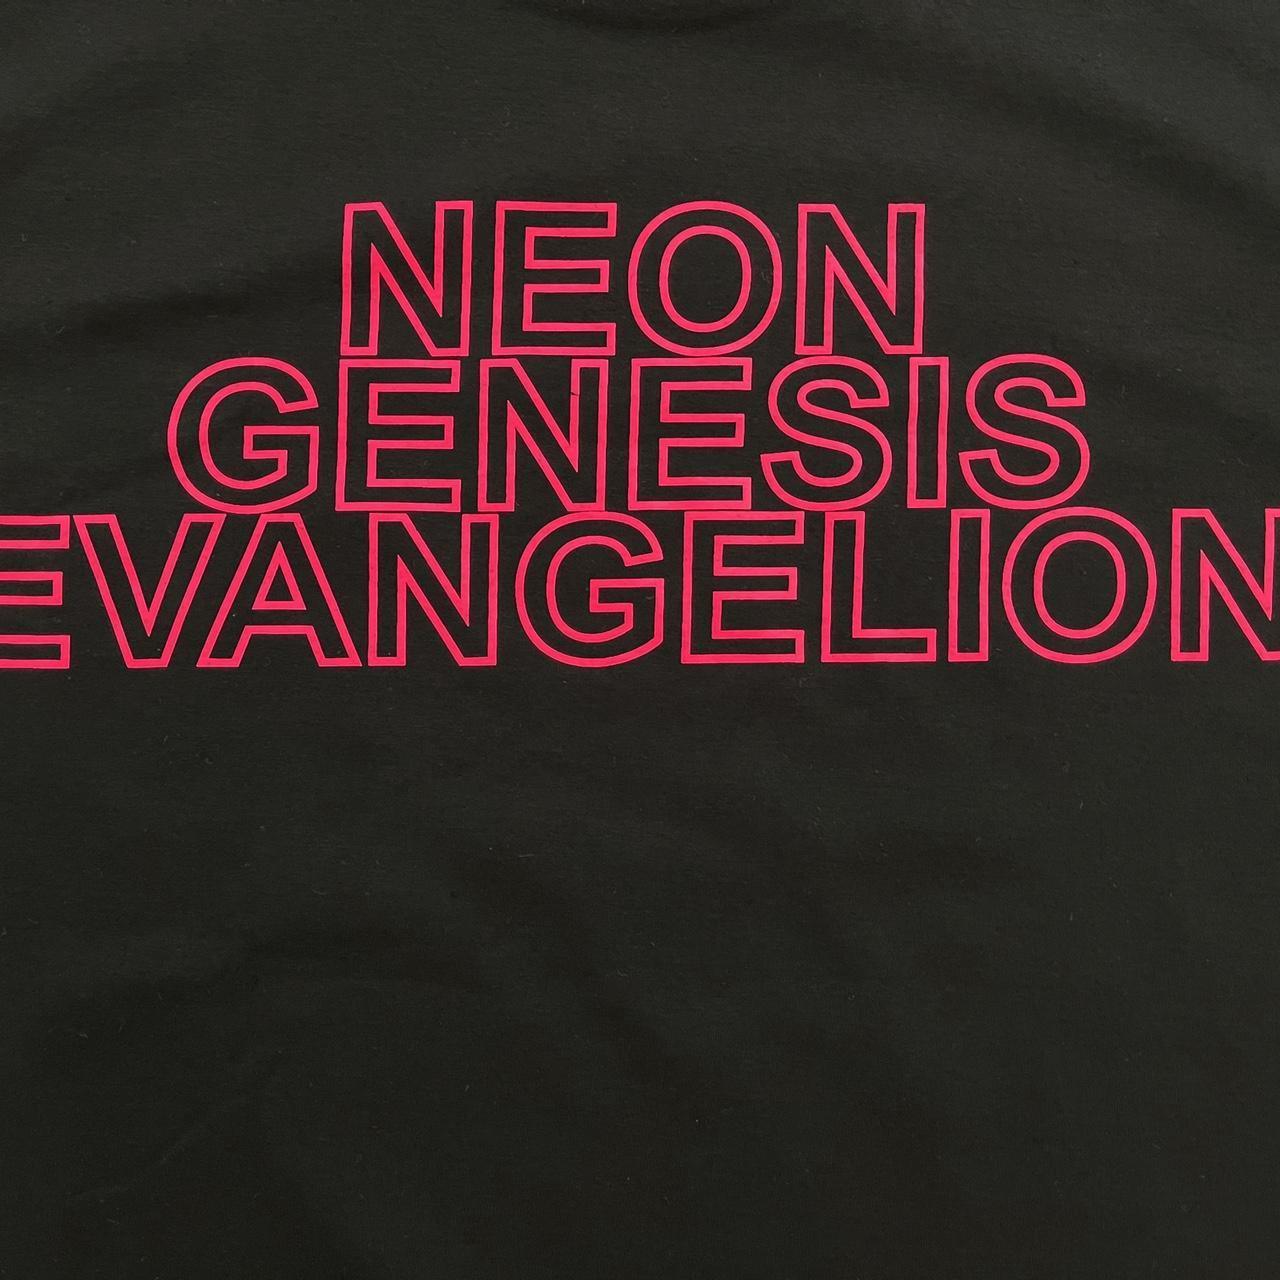 Evangelion T-Shirt - Known Source